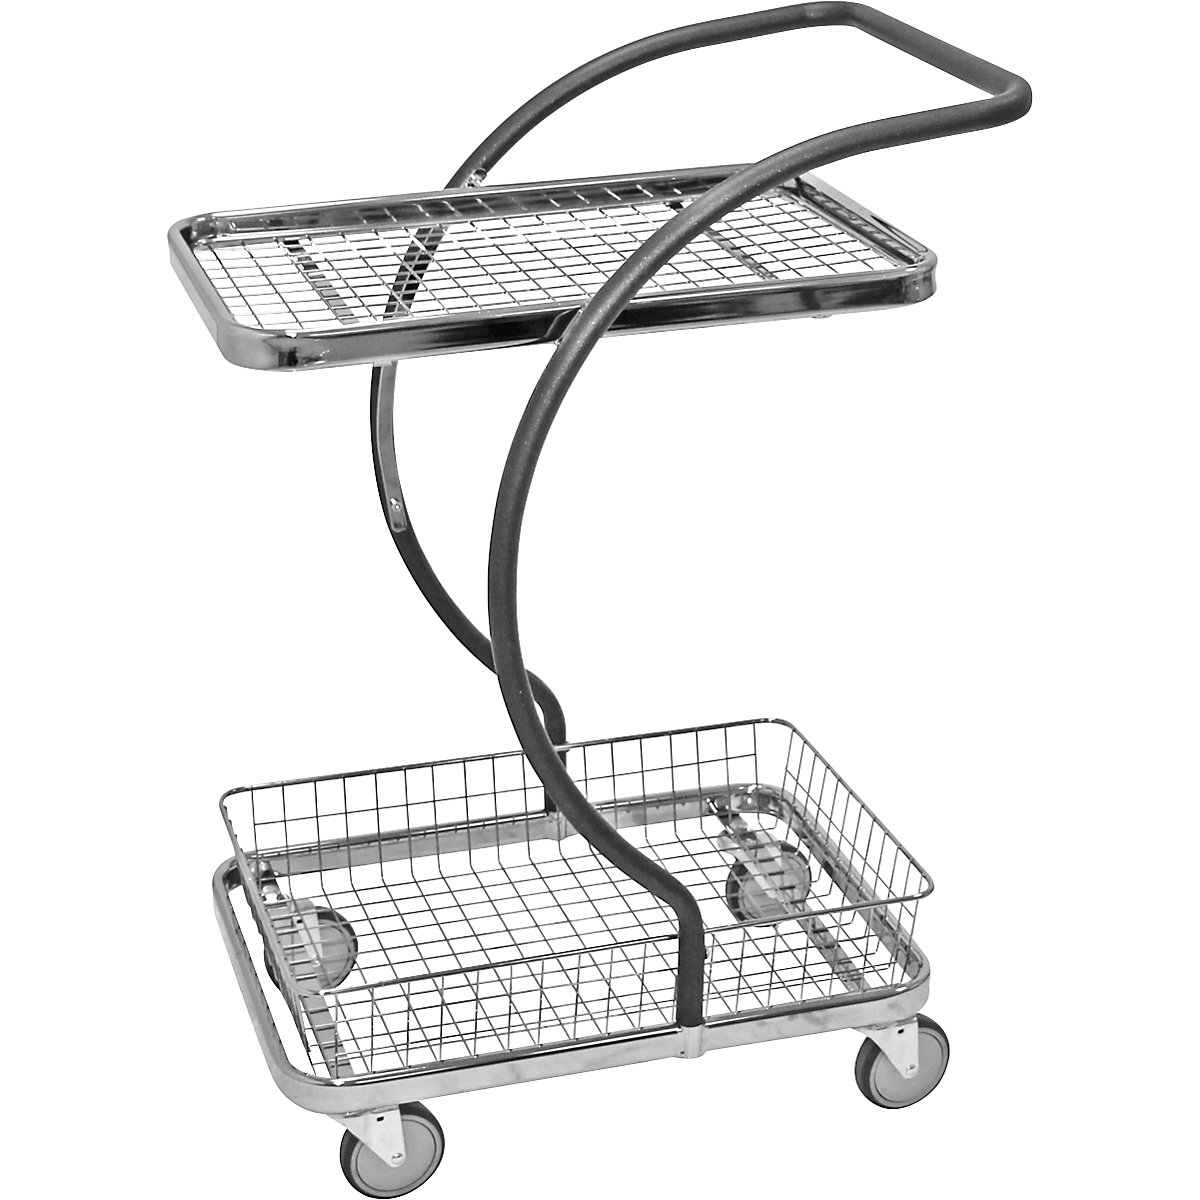 C-LINE nákupní a stolový vozík – Kongamek, s 1 drátěnou etáží, 1 drátěný koš, výšky etáží 160, 630 mm, od 2 ks-7